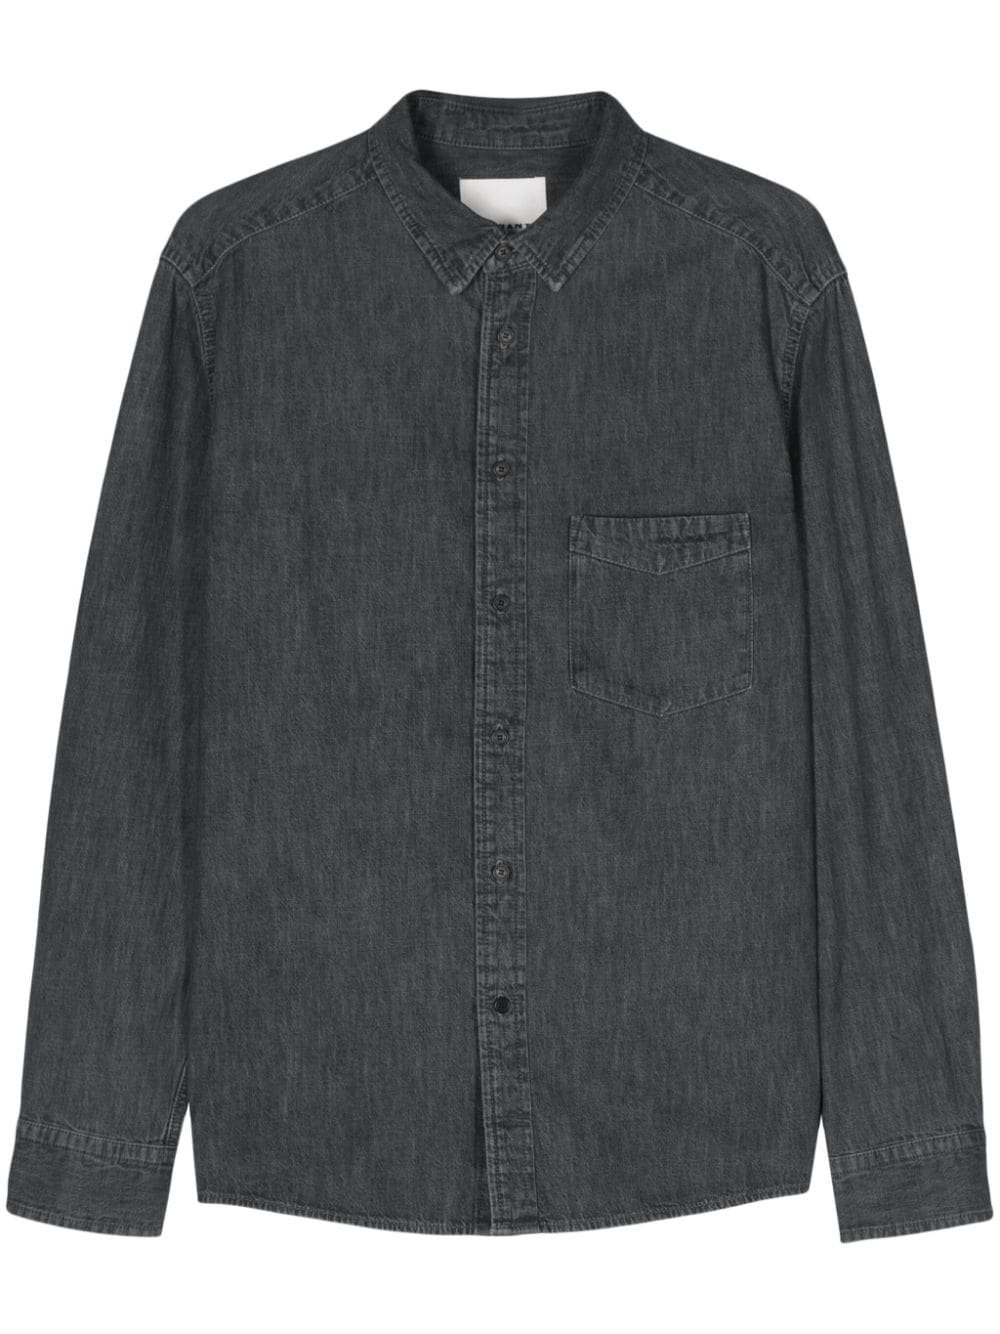 marant chemise en jean à logo brodé - gris